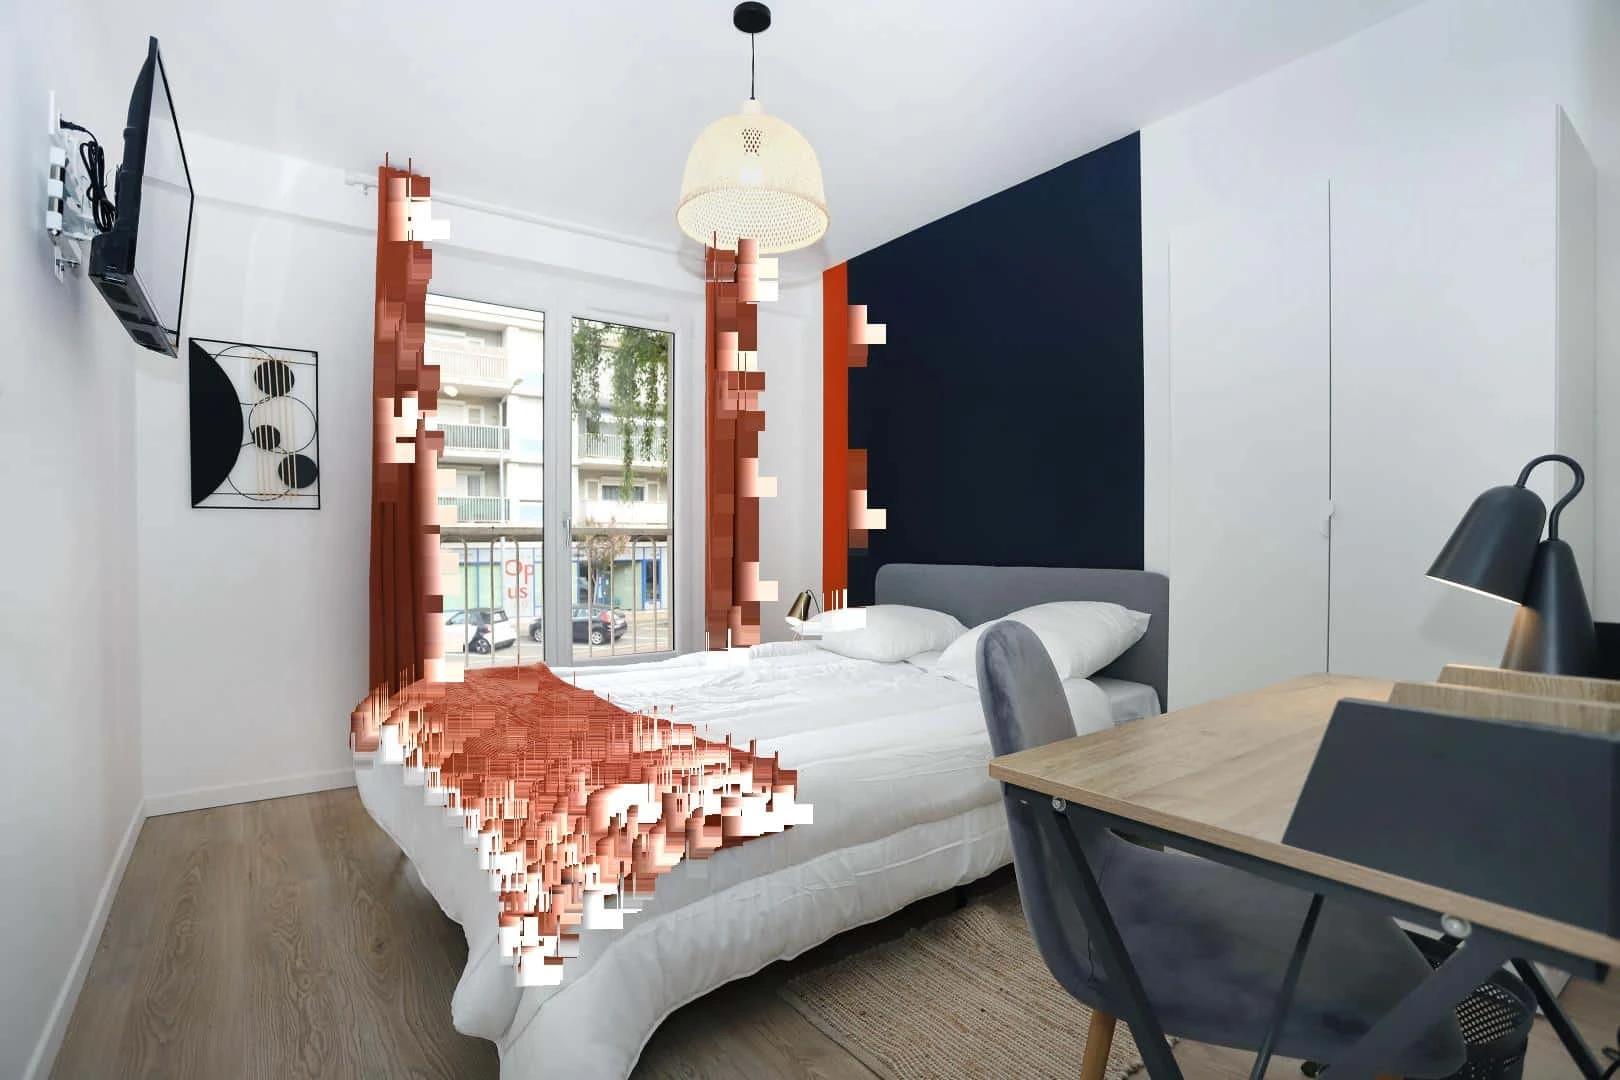 Angers de çift kişilik yataklı kiralık oda